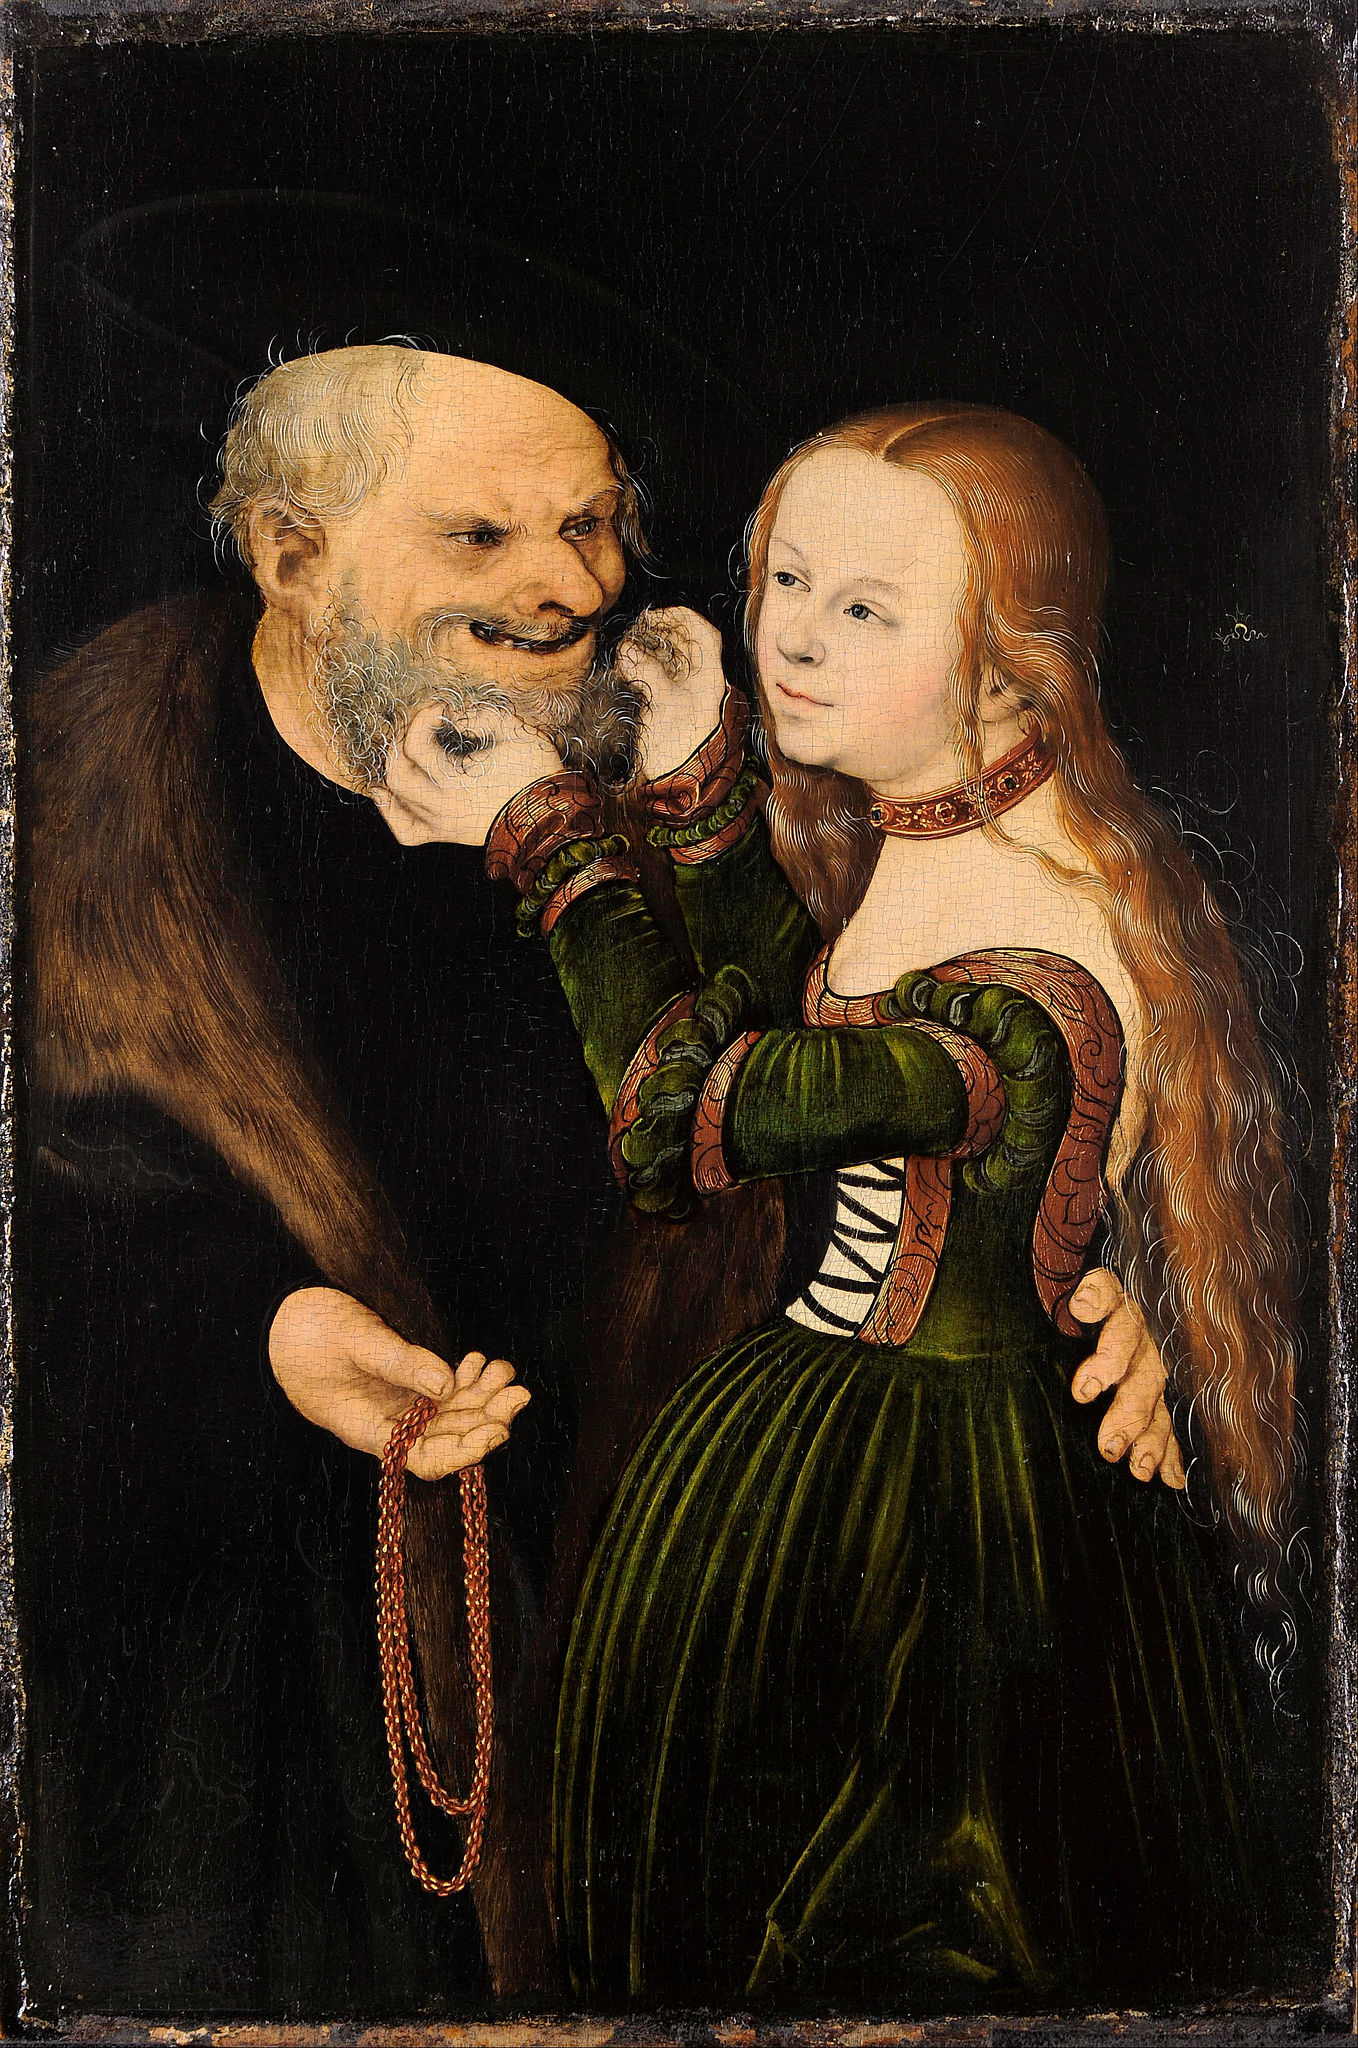 Het ongelijke paar (De verliefde oude man) by Lucas Cranach de Oudere - ca 1530 - 25,7 x 38,8 cm Museum Kunstpalast